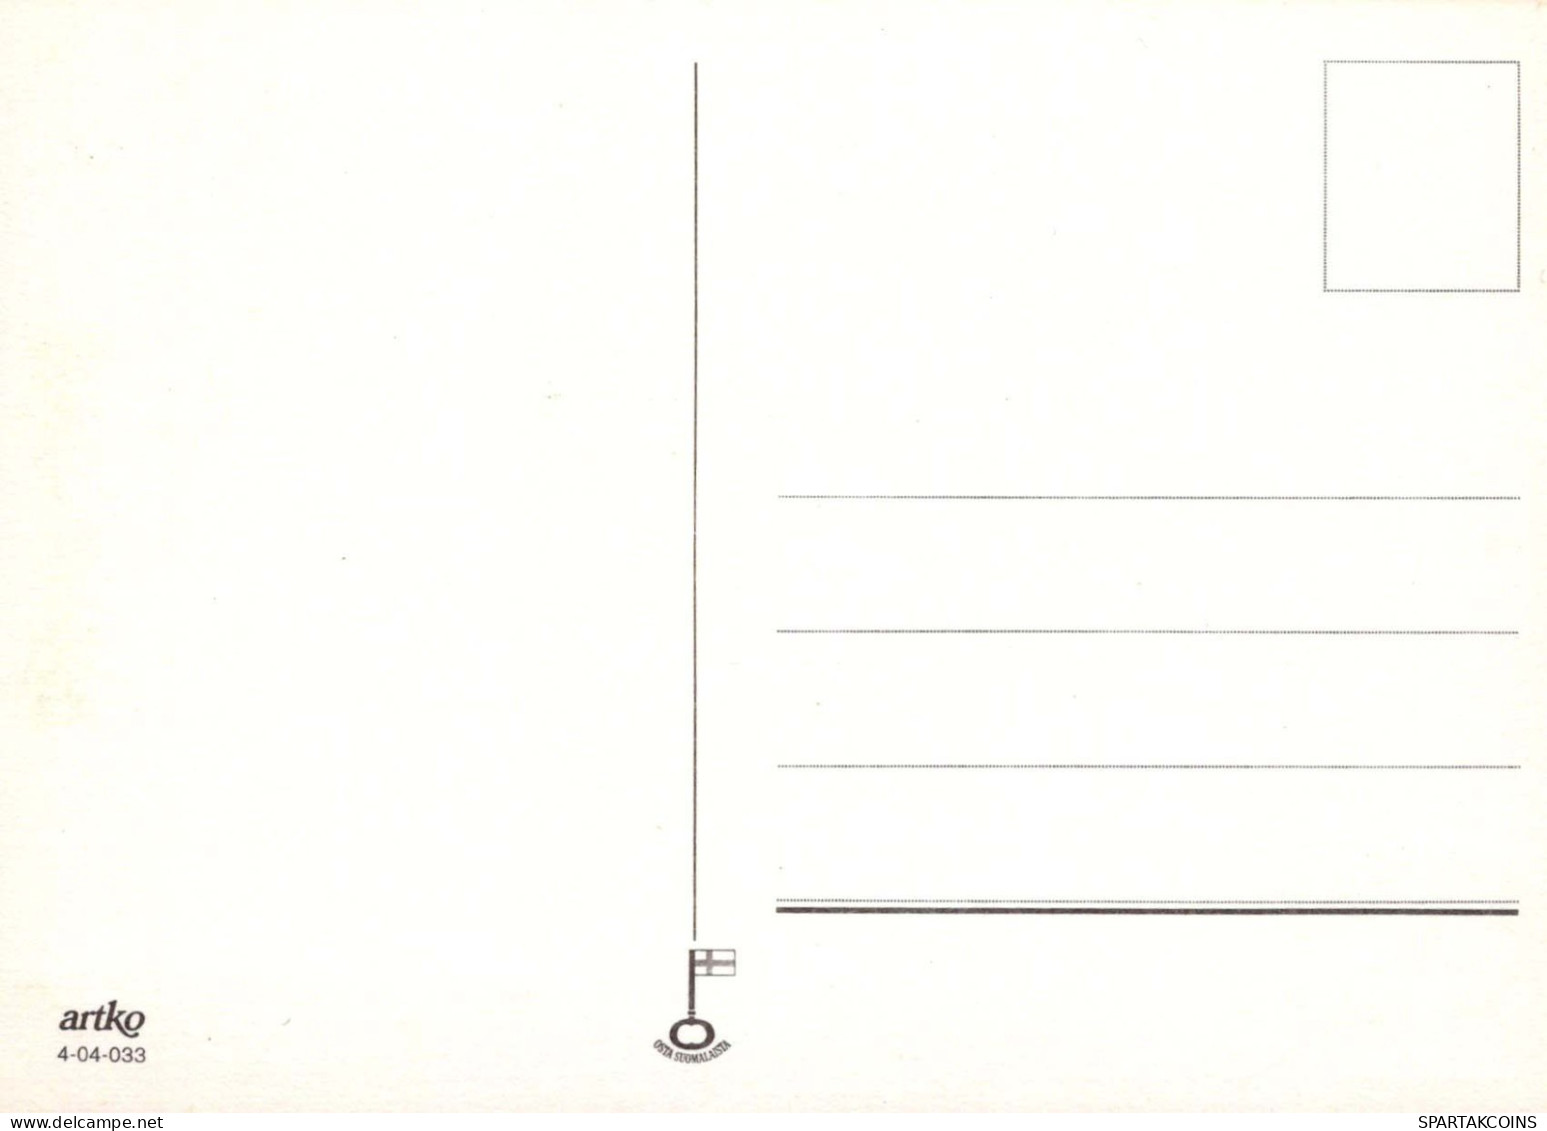 ALLES GUTE ZUM GEBURTSTAG 8 Jährige MÄDCHEN KINDER Vintage Ansichtskarte Postkarte CPSM Unposted #PBU052.DE - Birthday